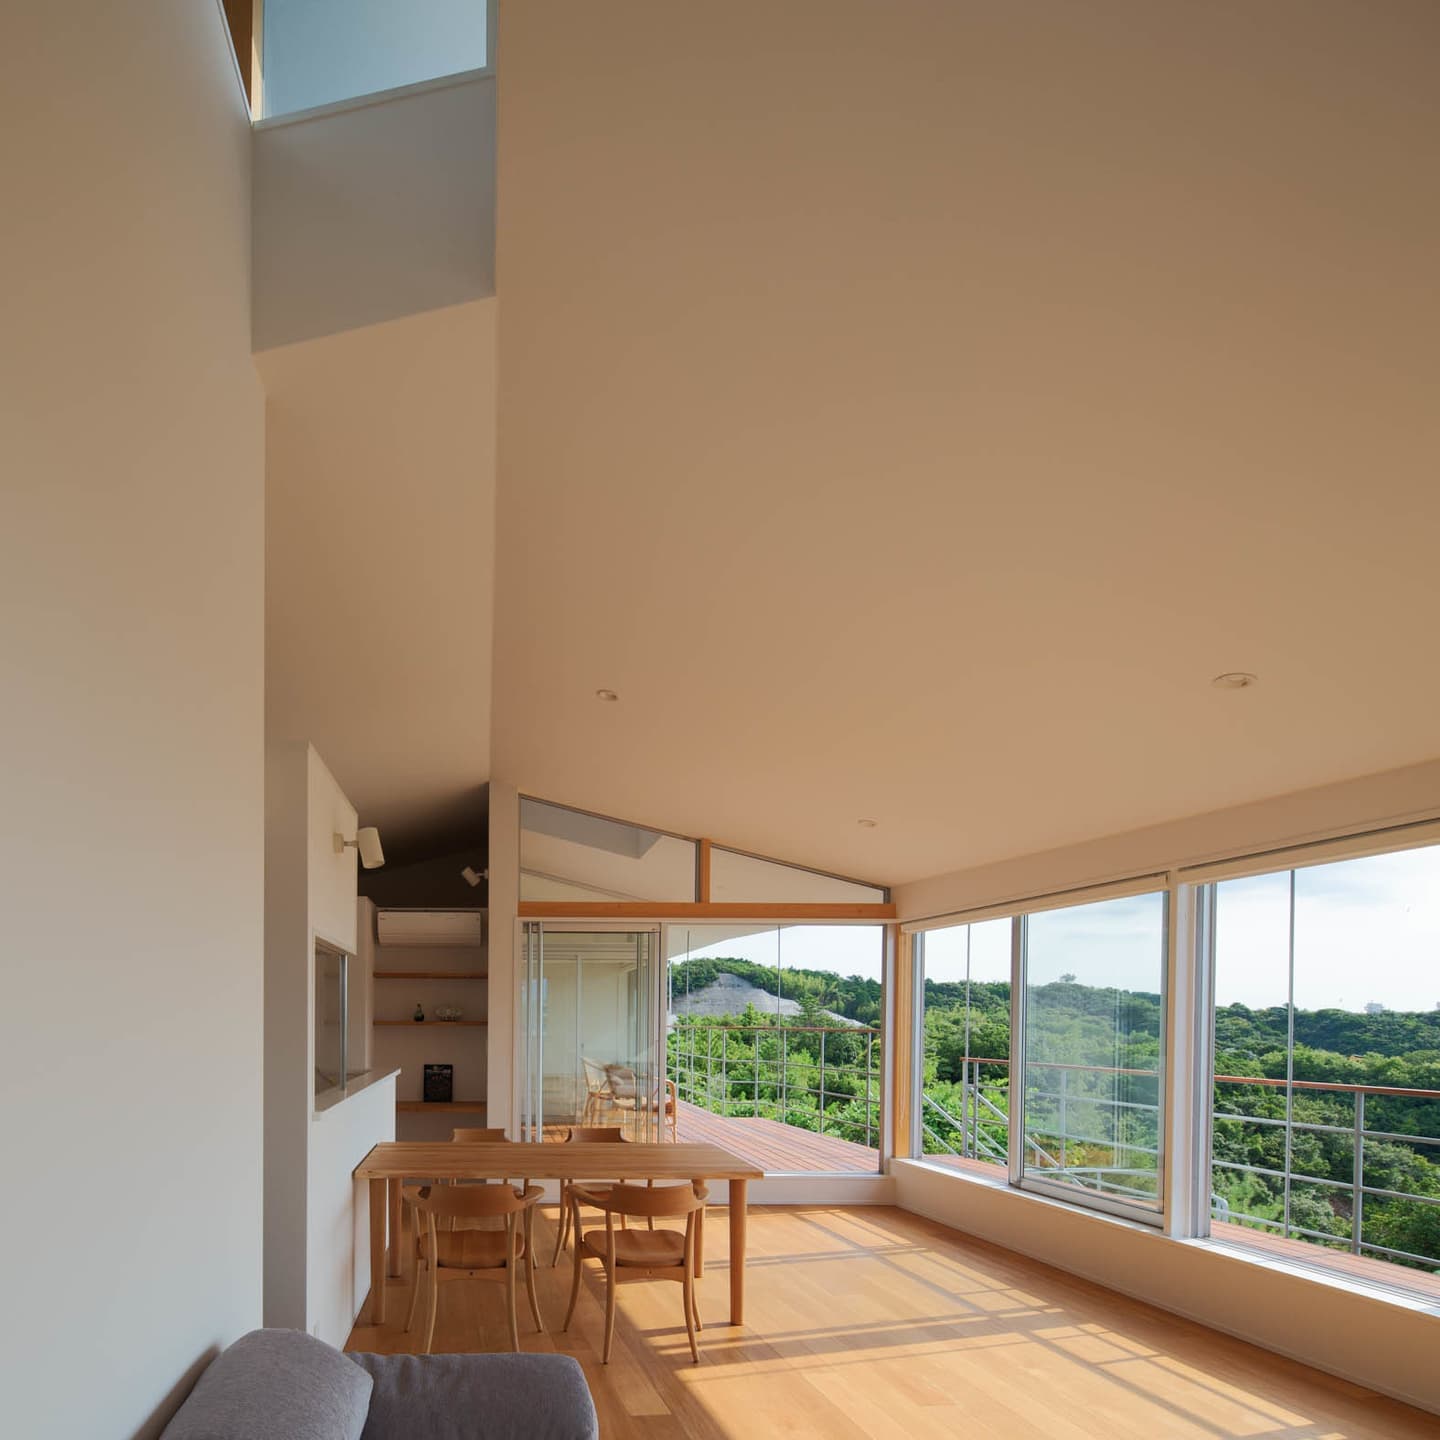 大阪の建築家・中平勝が設計した2階リビングの木造住宅です